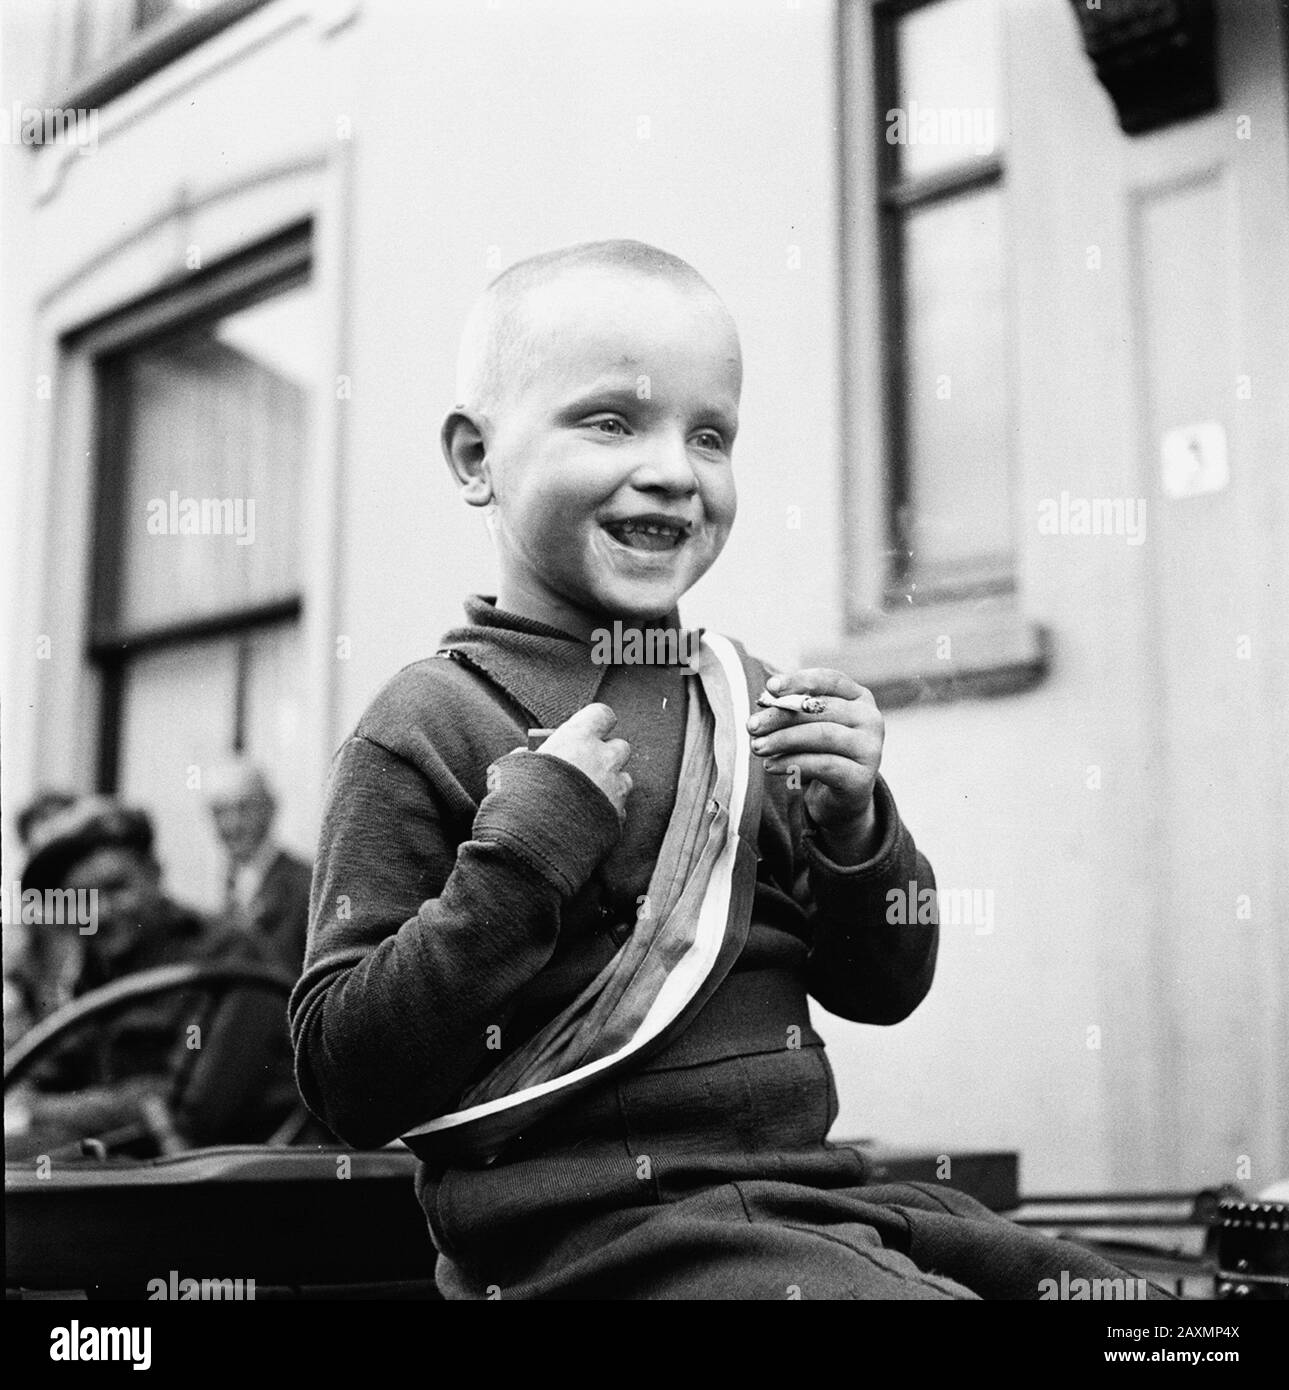 L'asilo celebra la liberazione con una sigaretta. Data: Aprile 1945 Creatore: Anefo / poll, Willem van de Filenumber: 900-2530 URL: http://beeldbank.nationaalarchief.nl/na:col1:dat244357 Per ulteriori informazioni sugli archivi nazionali: HTTP: //www.nazionaalarcheef .com Per ulteriori foto di questa e di altre collezioni, visitate la nostra Image Bank :, http://www.beeldbank.nationaalarchief.nl per favore aiutateci ad arricchire la nostra conoscenza delle raccolte fotografiche aggiungendo tag e commenti da aggiungere. Riconoscete persone o luoghi o raccontate una storia speciale in una delle foto, vi preghiamo di lasciare un commento (se Foto Stock